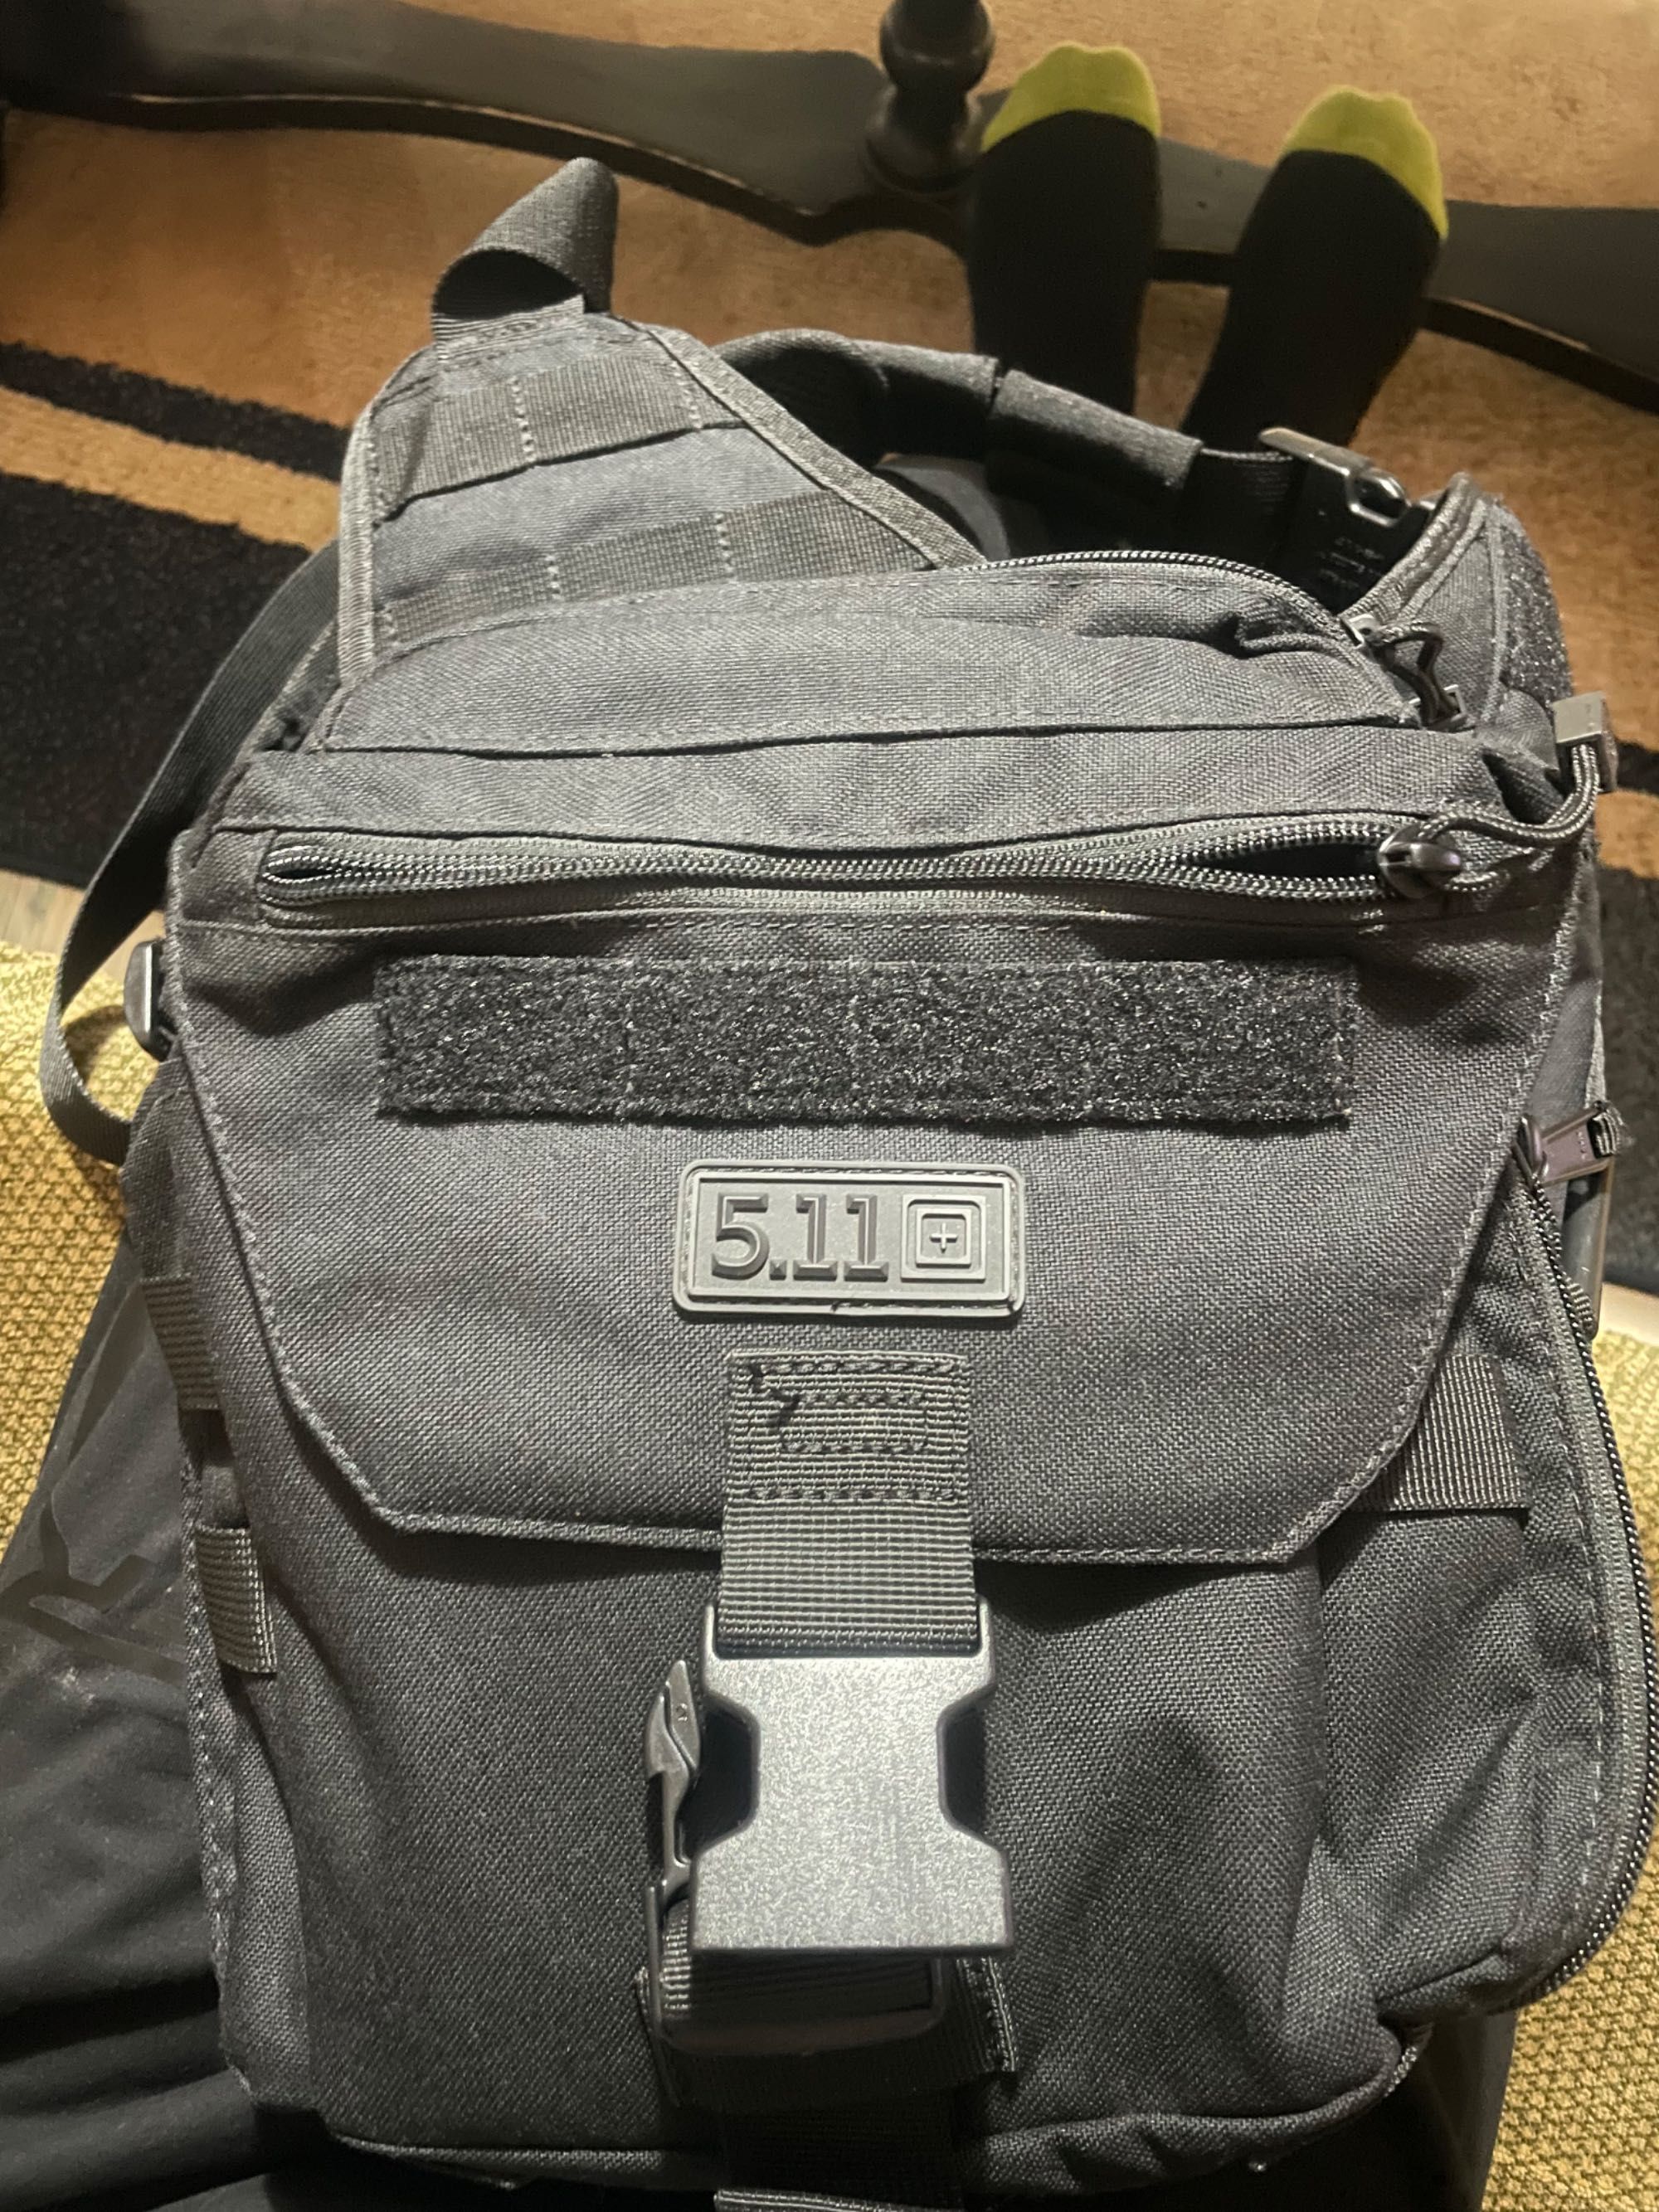 5.11 tactical bag